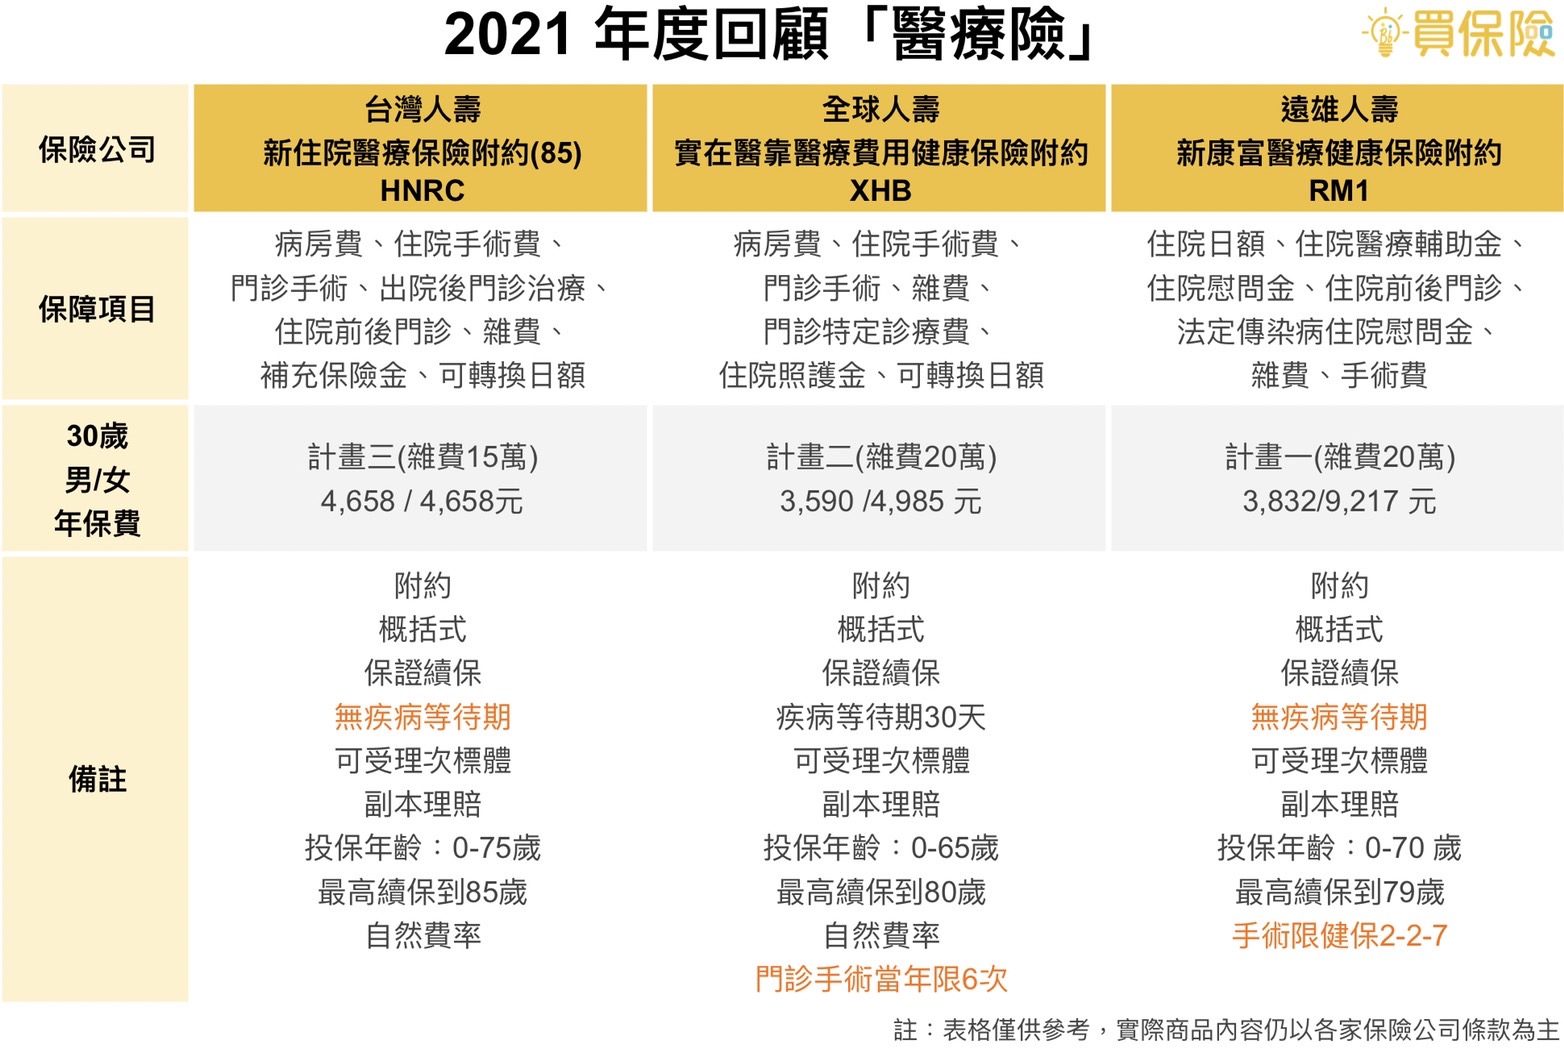 2021年度回顧，網路熱門實支實付醫療險商品，台灣人壽HNRC、全球人壽XHB、遠雄人壽RM1